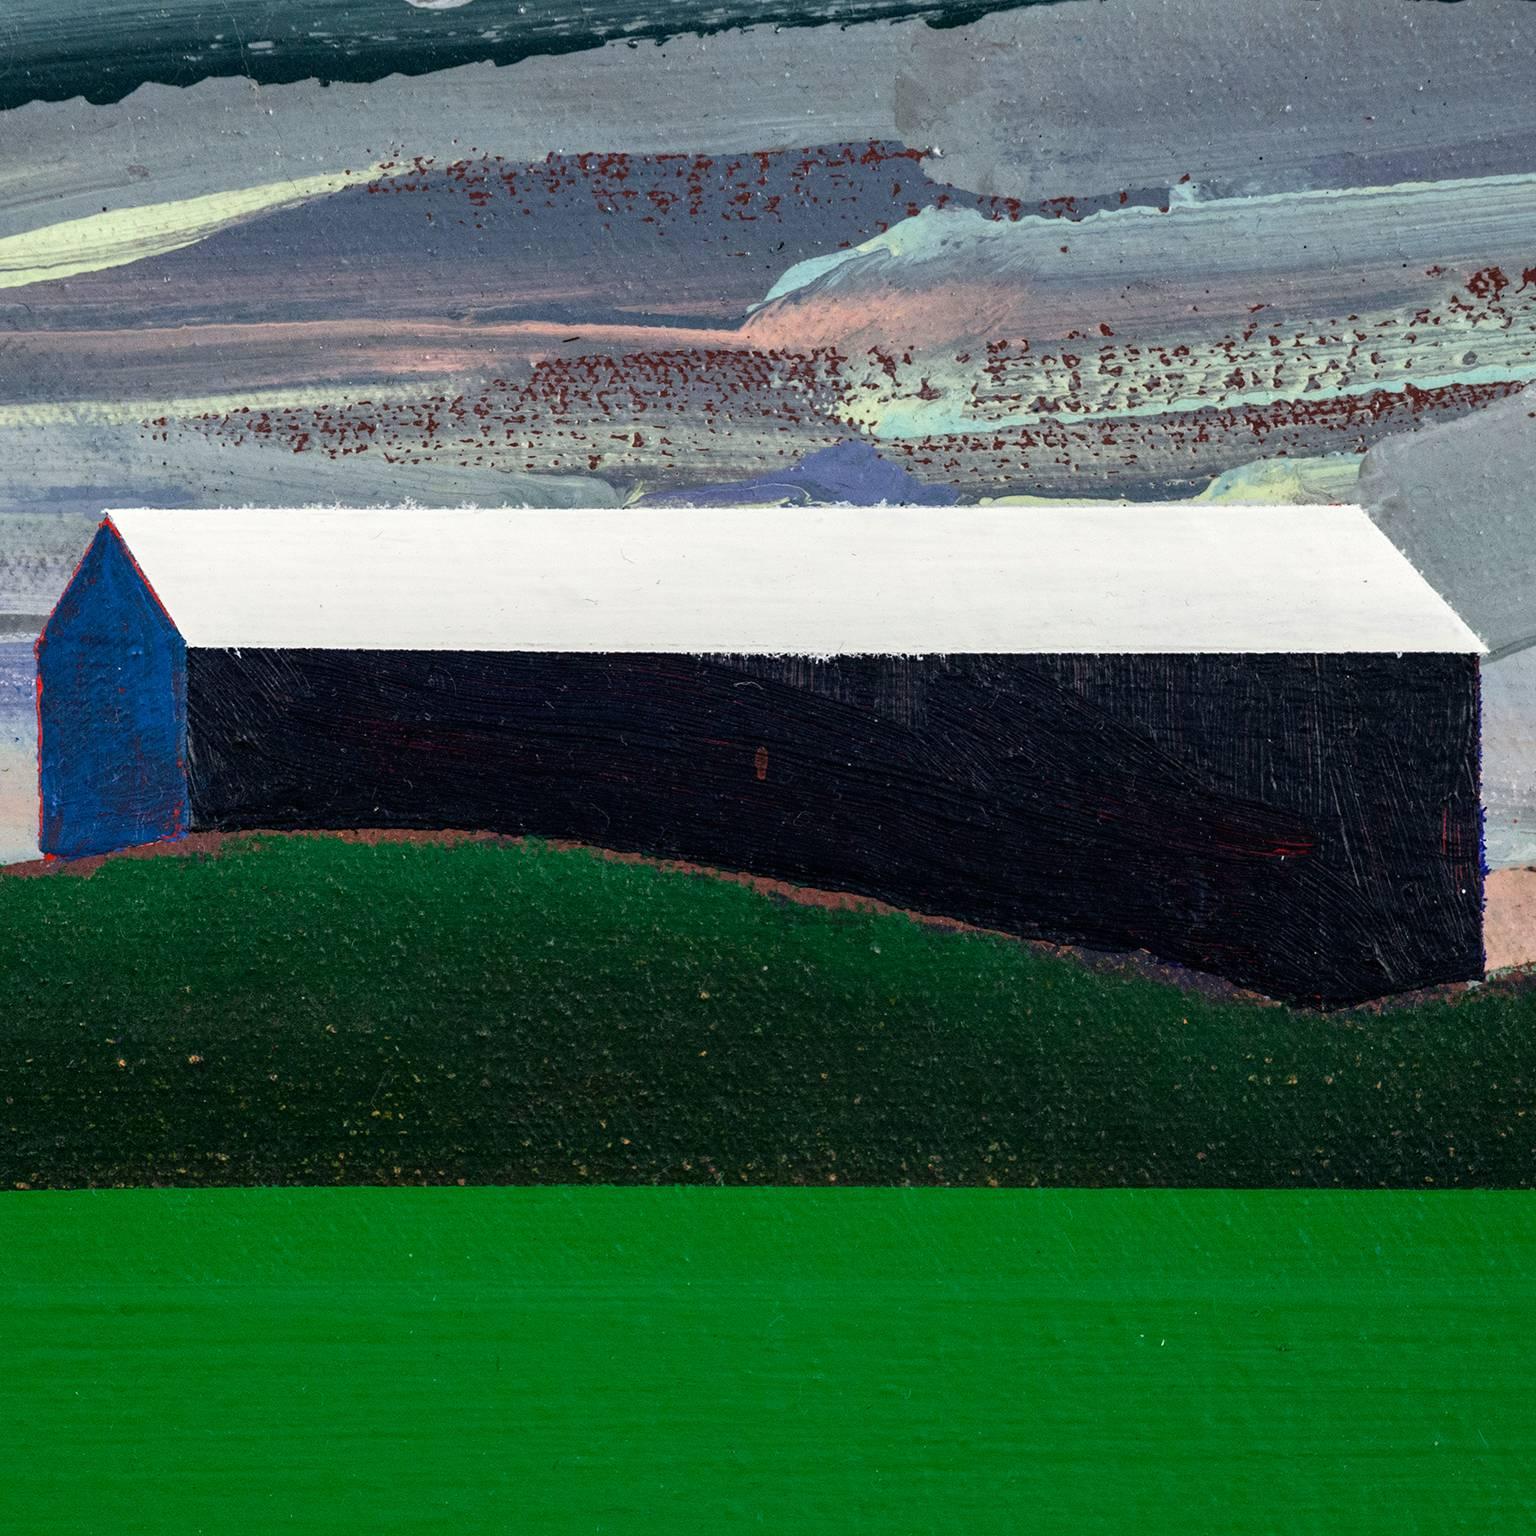 Blue Barn, Green Field 1